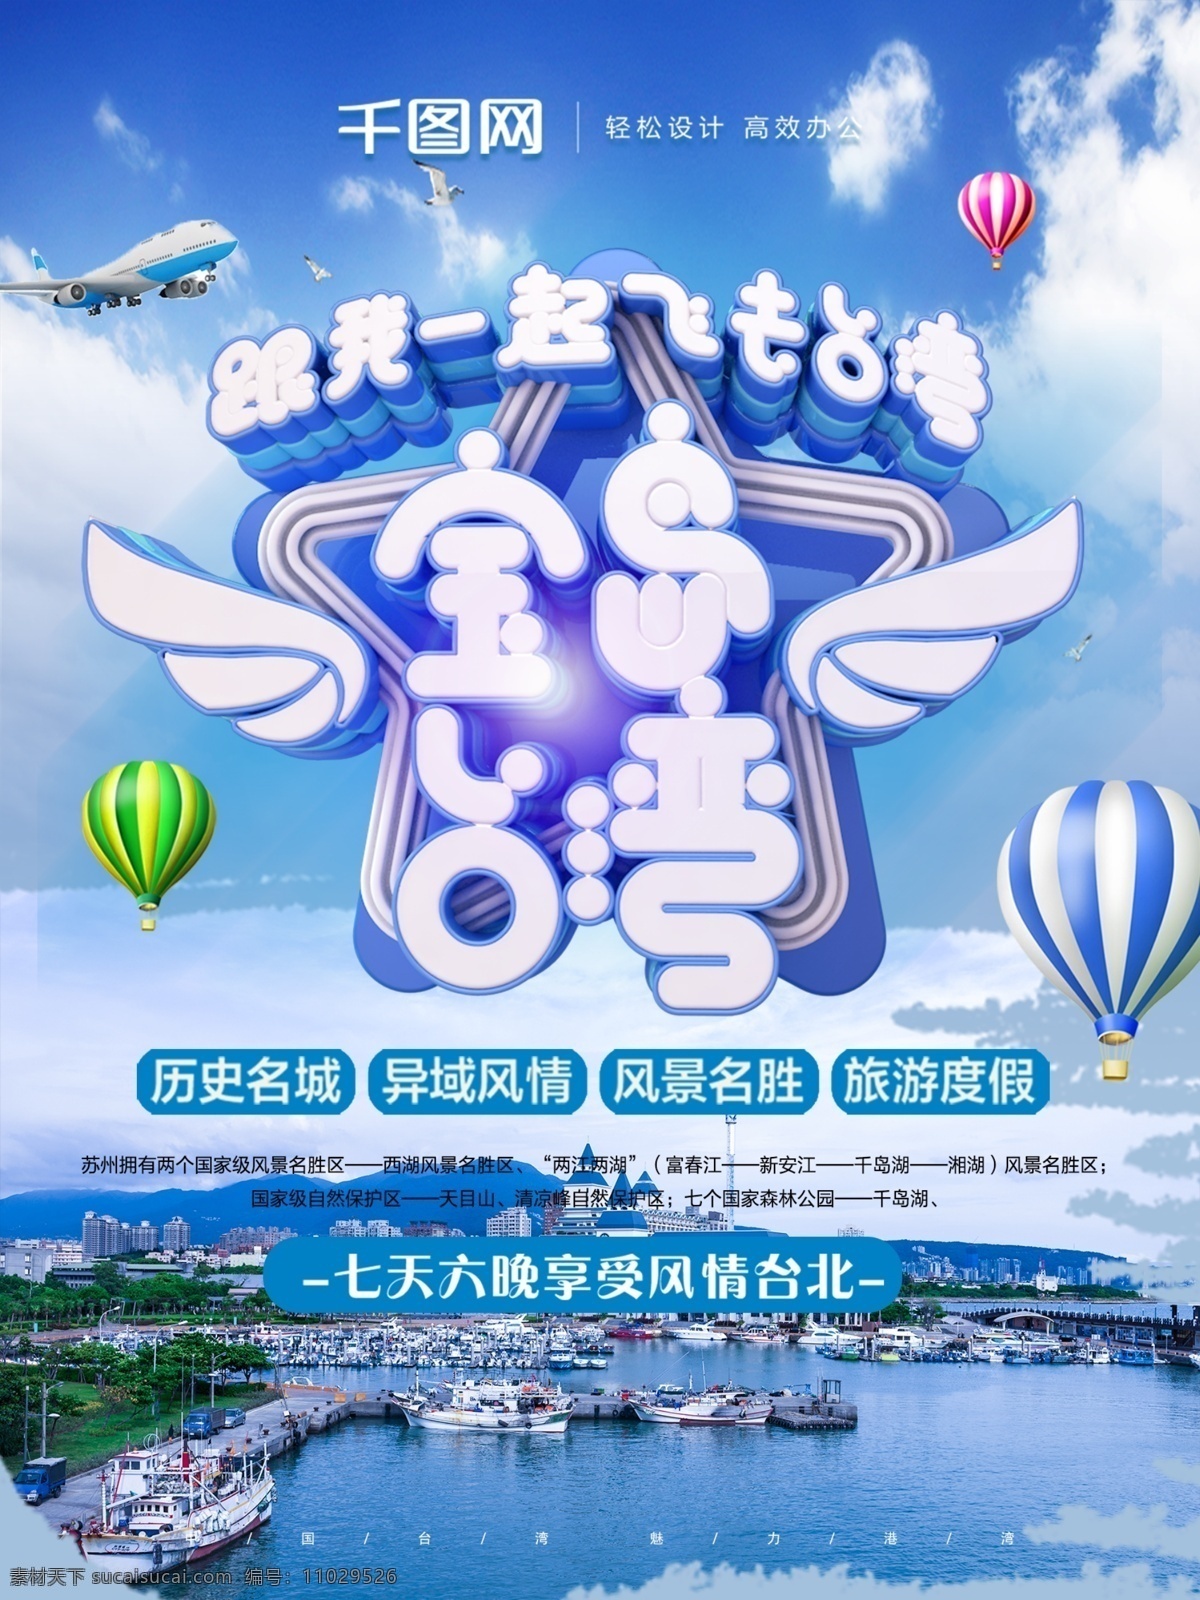 原创 c4d 宝岛 台湾 清新 简约 旅游 宣传海报 宣传 海报